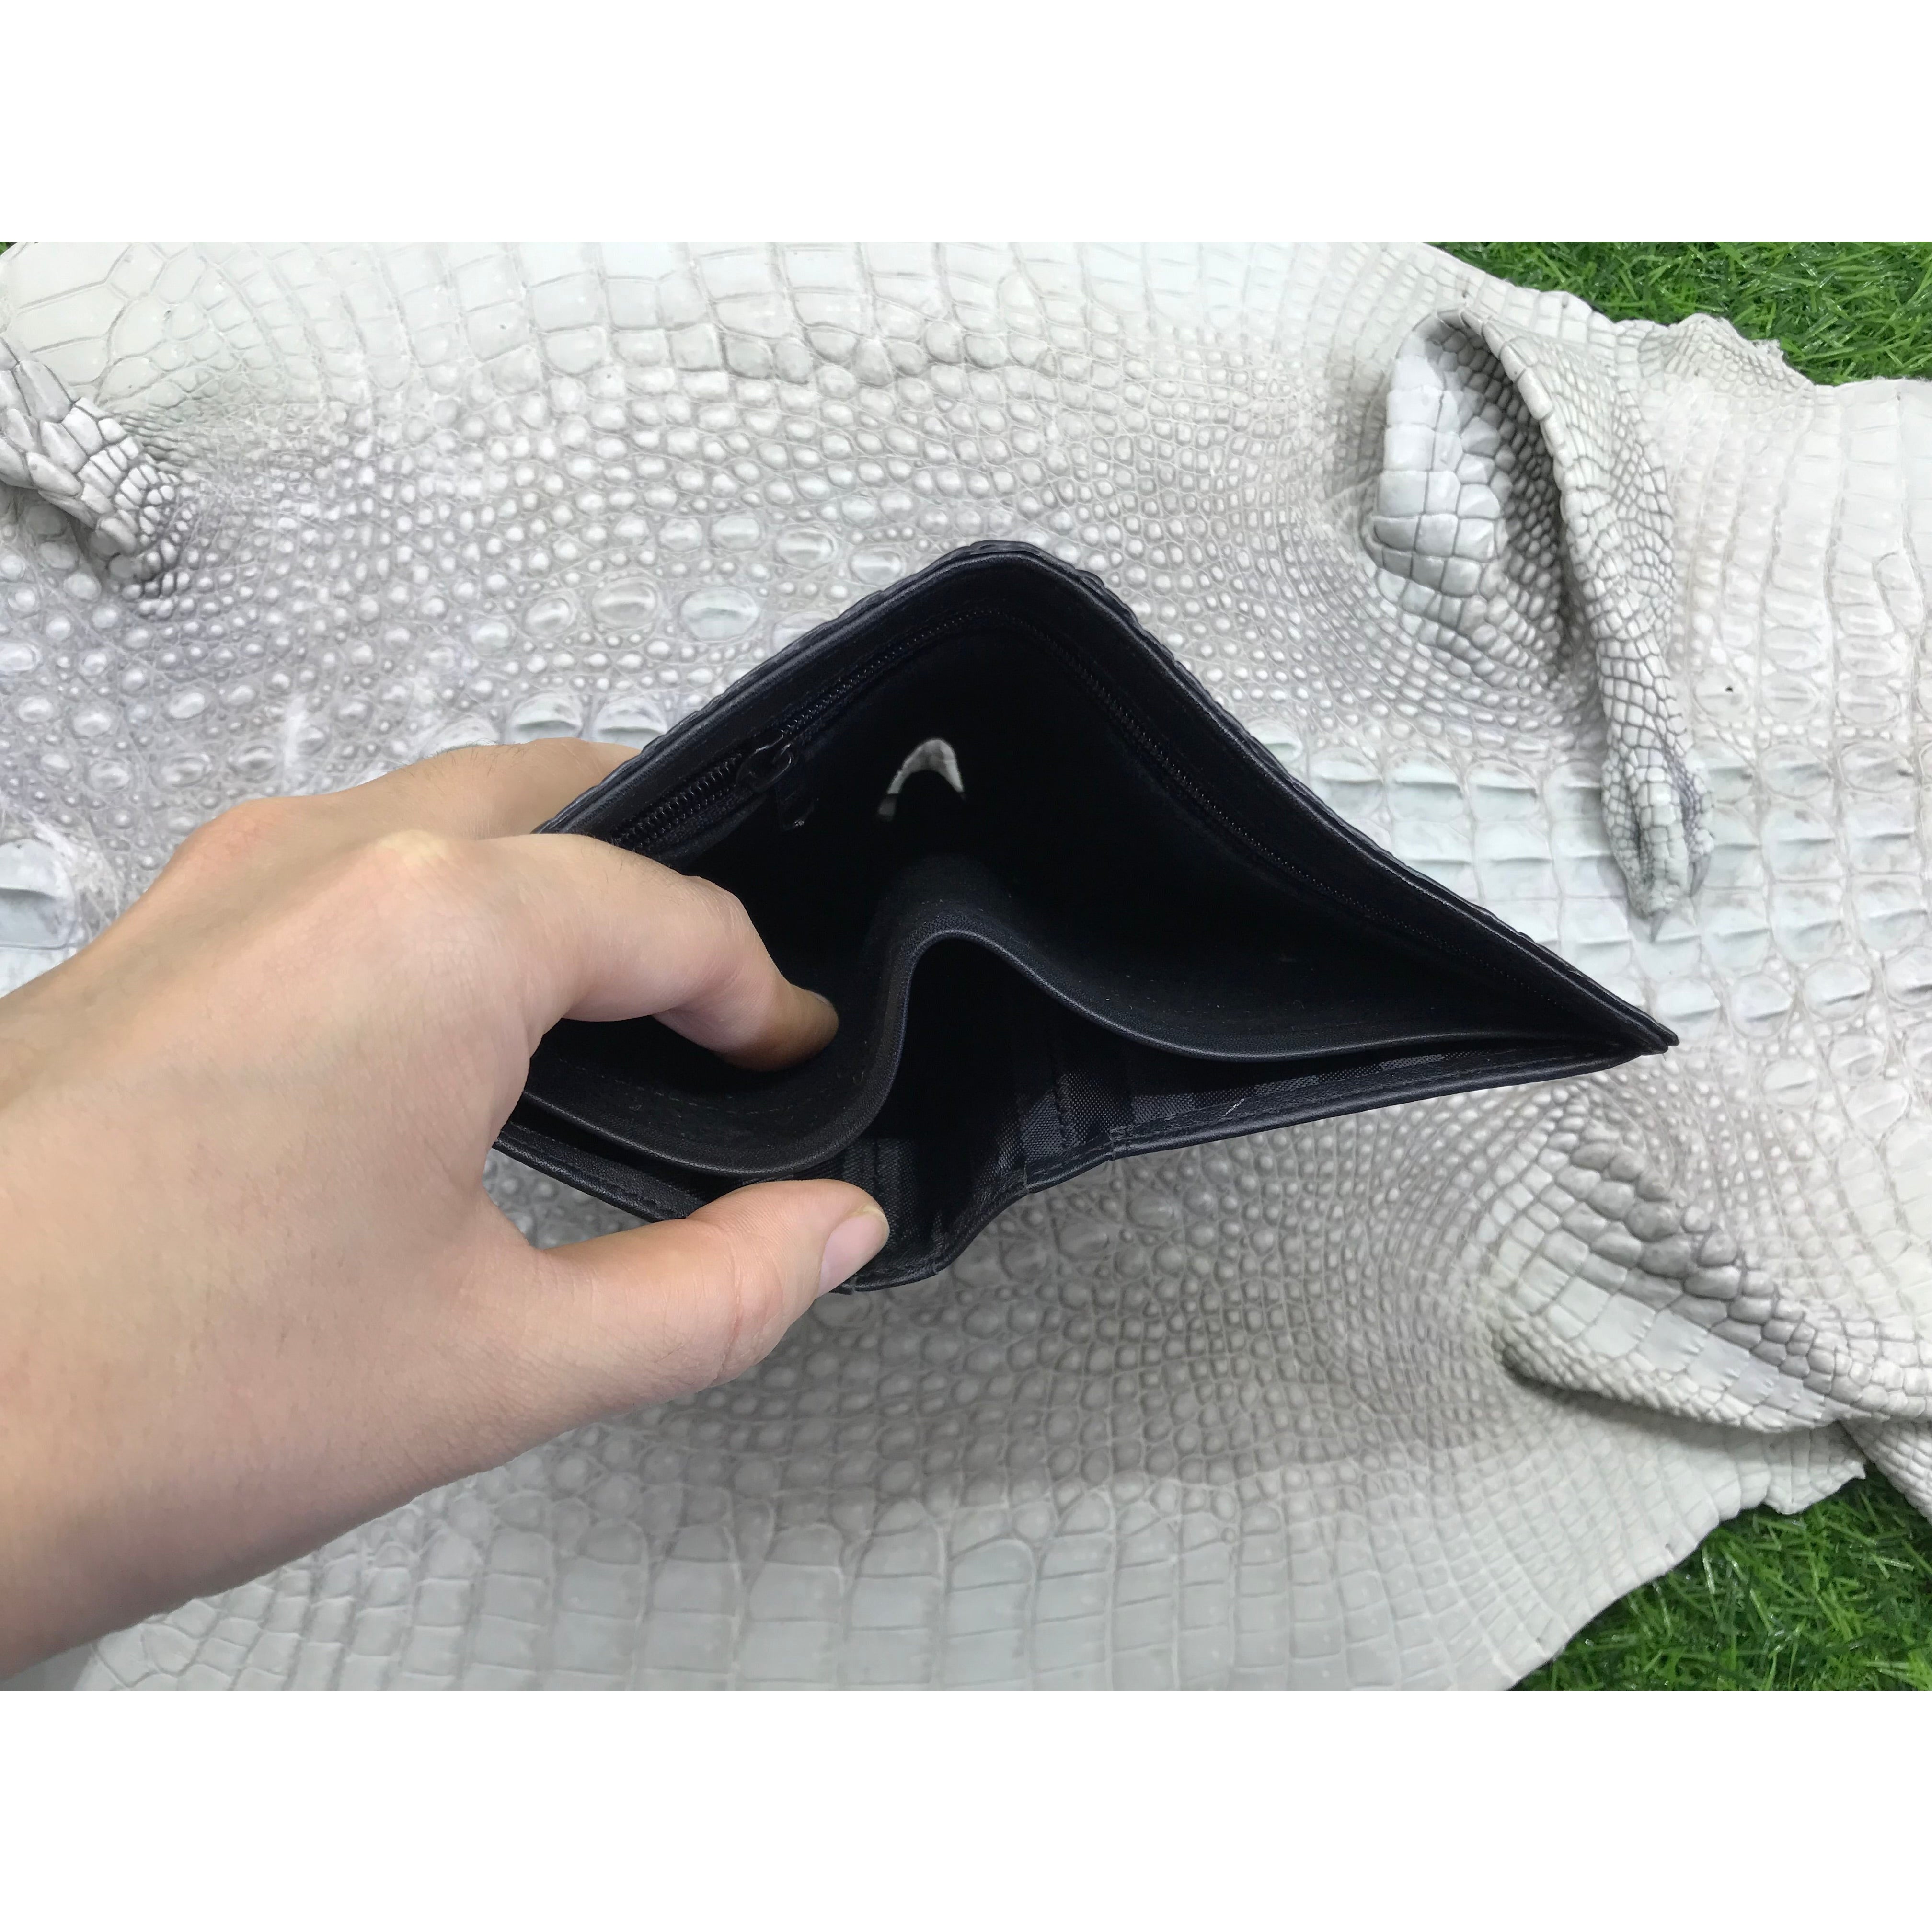 Black Alligator Horn Back Skin Bifold Vertical Wallet For Men | Handmade Crocodile Leather Wallet RFID Blocking | VL5678 - Vinacreations